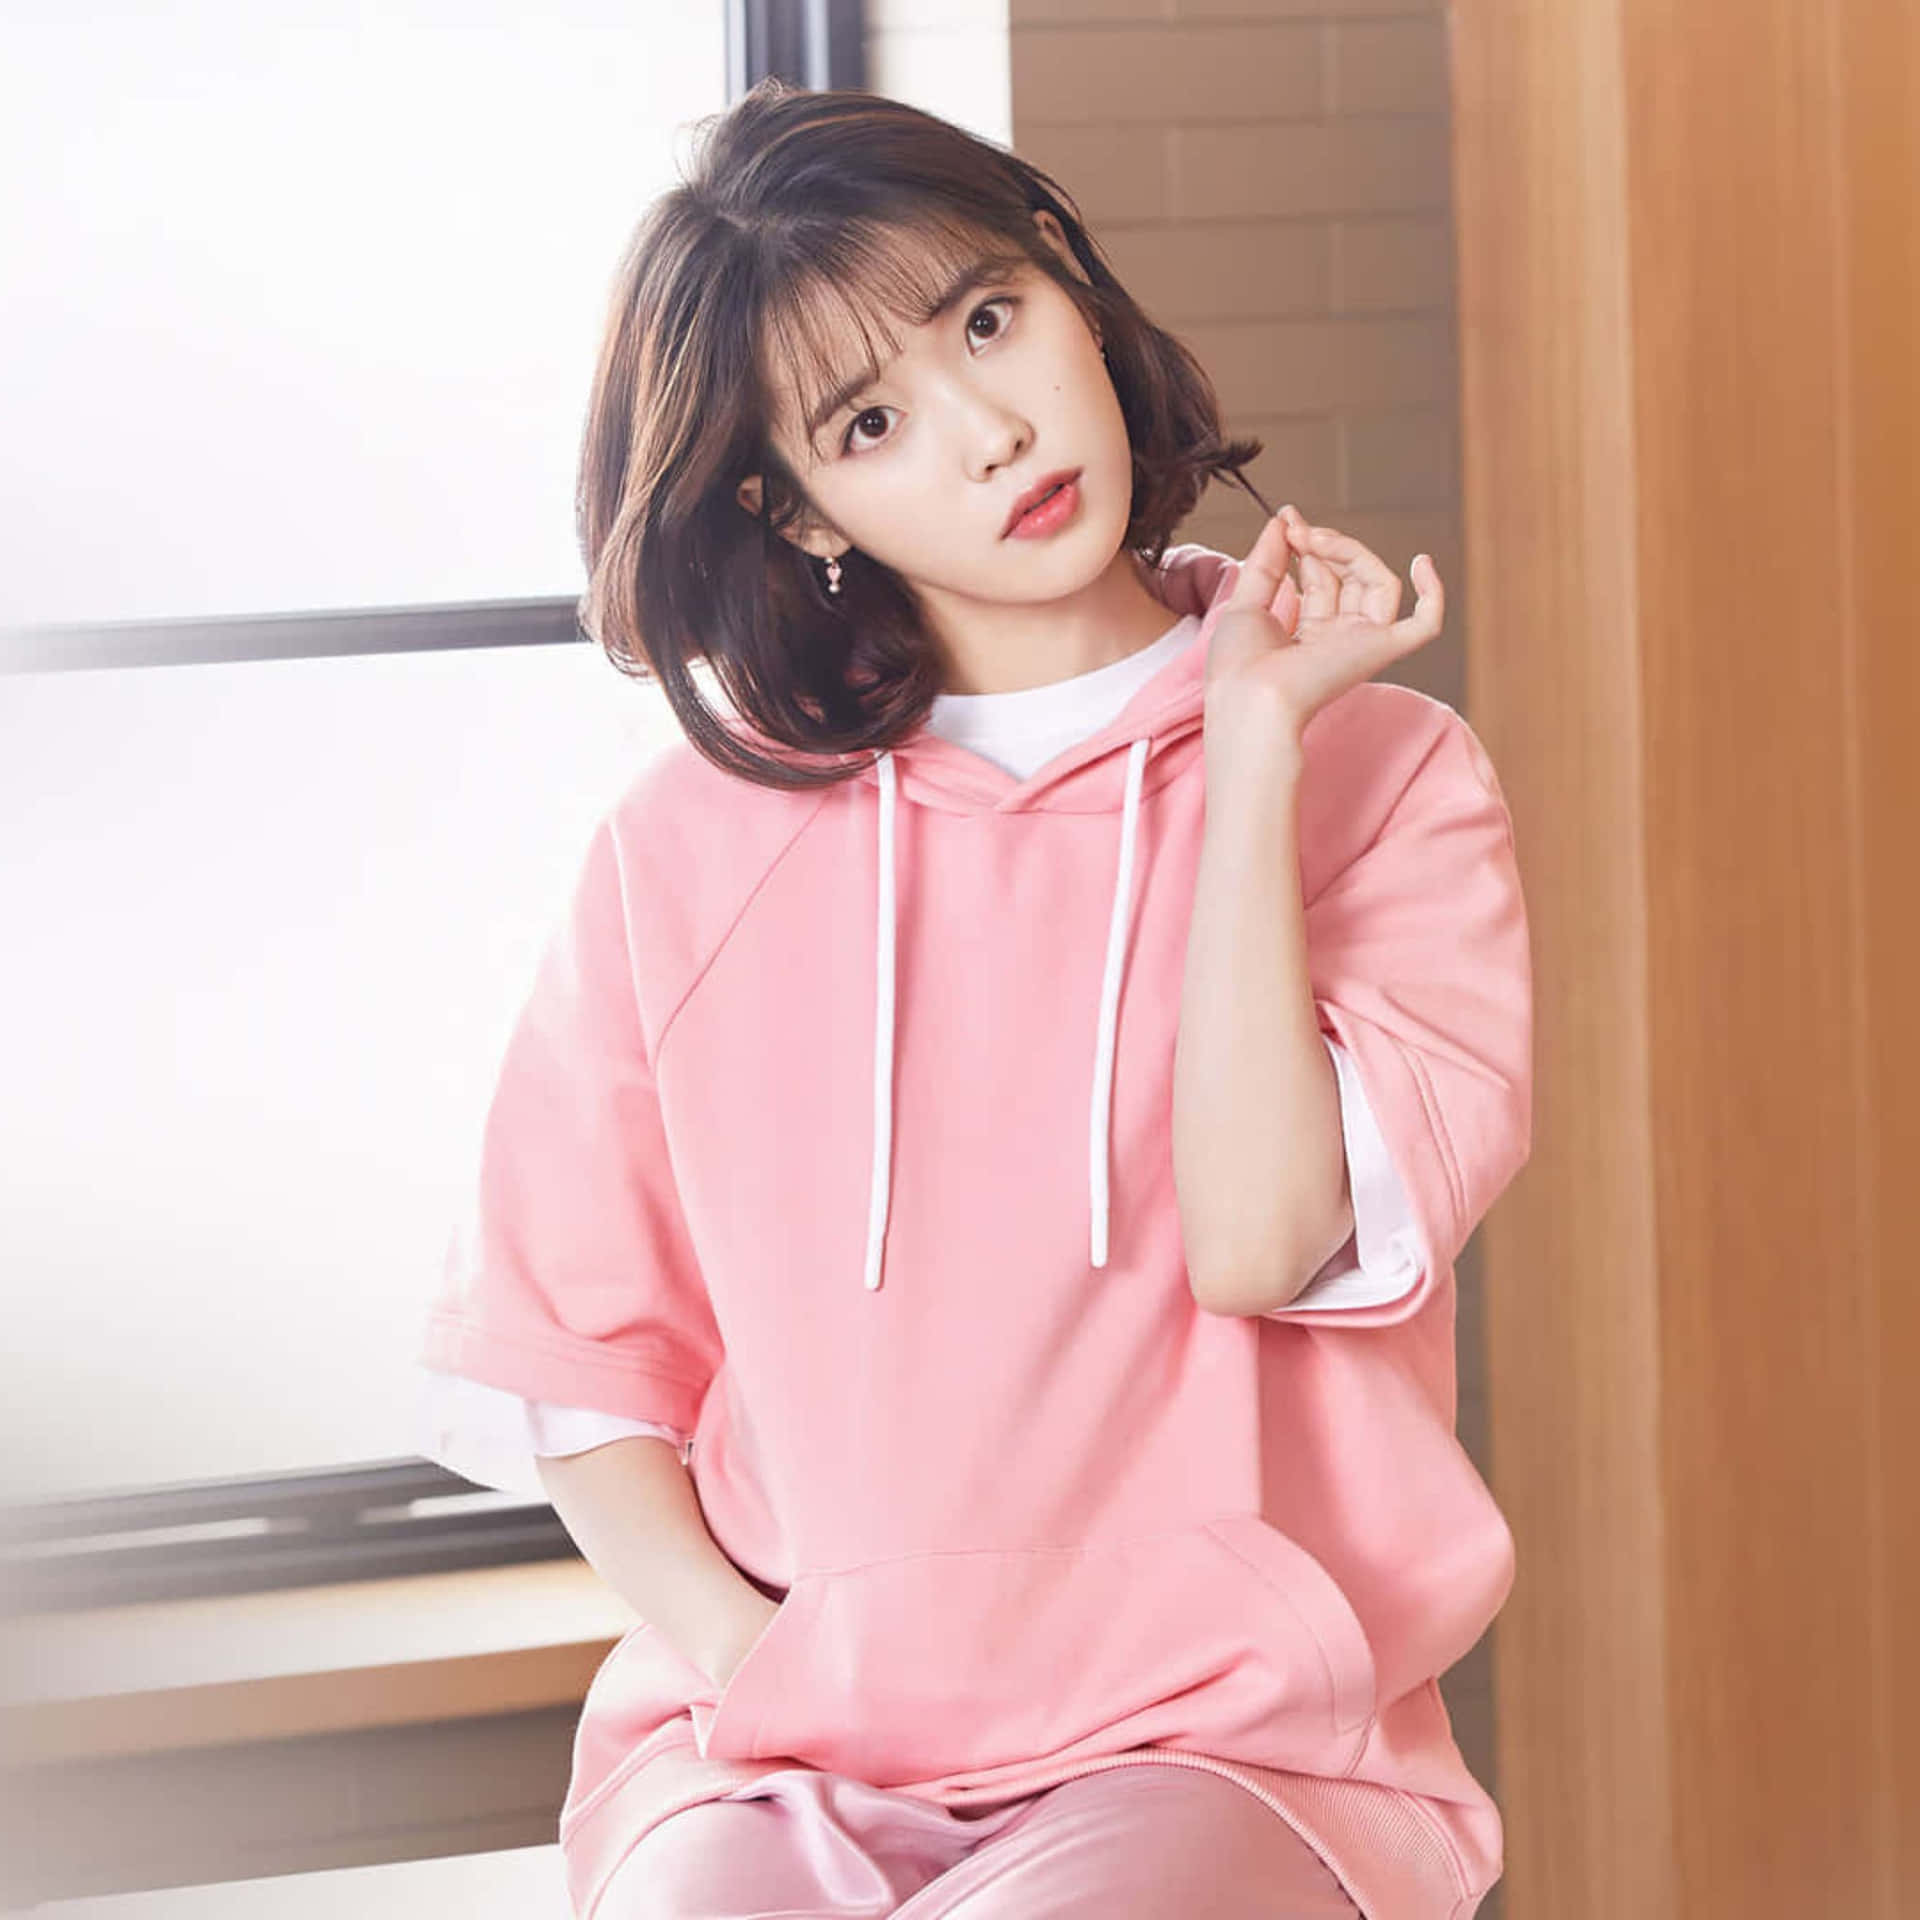 Kpop Star_ Pink Hoodie Pose Wallpaper